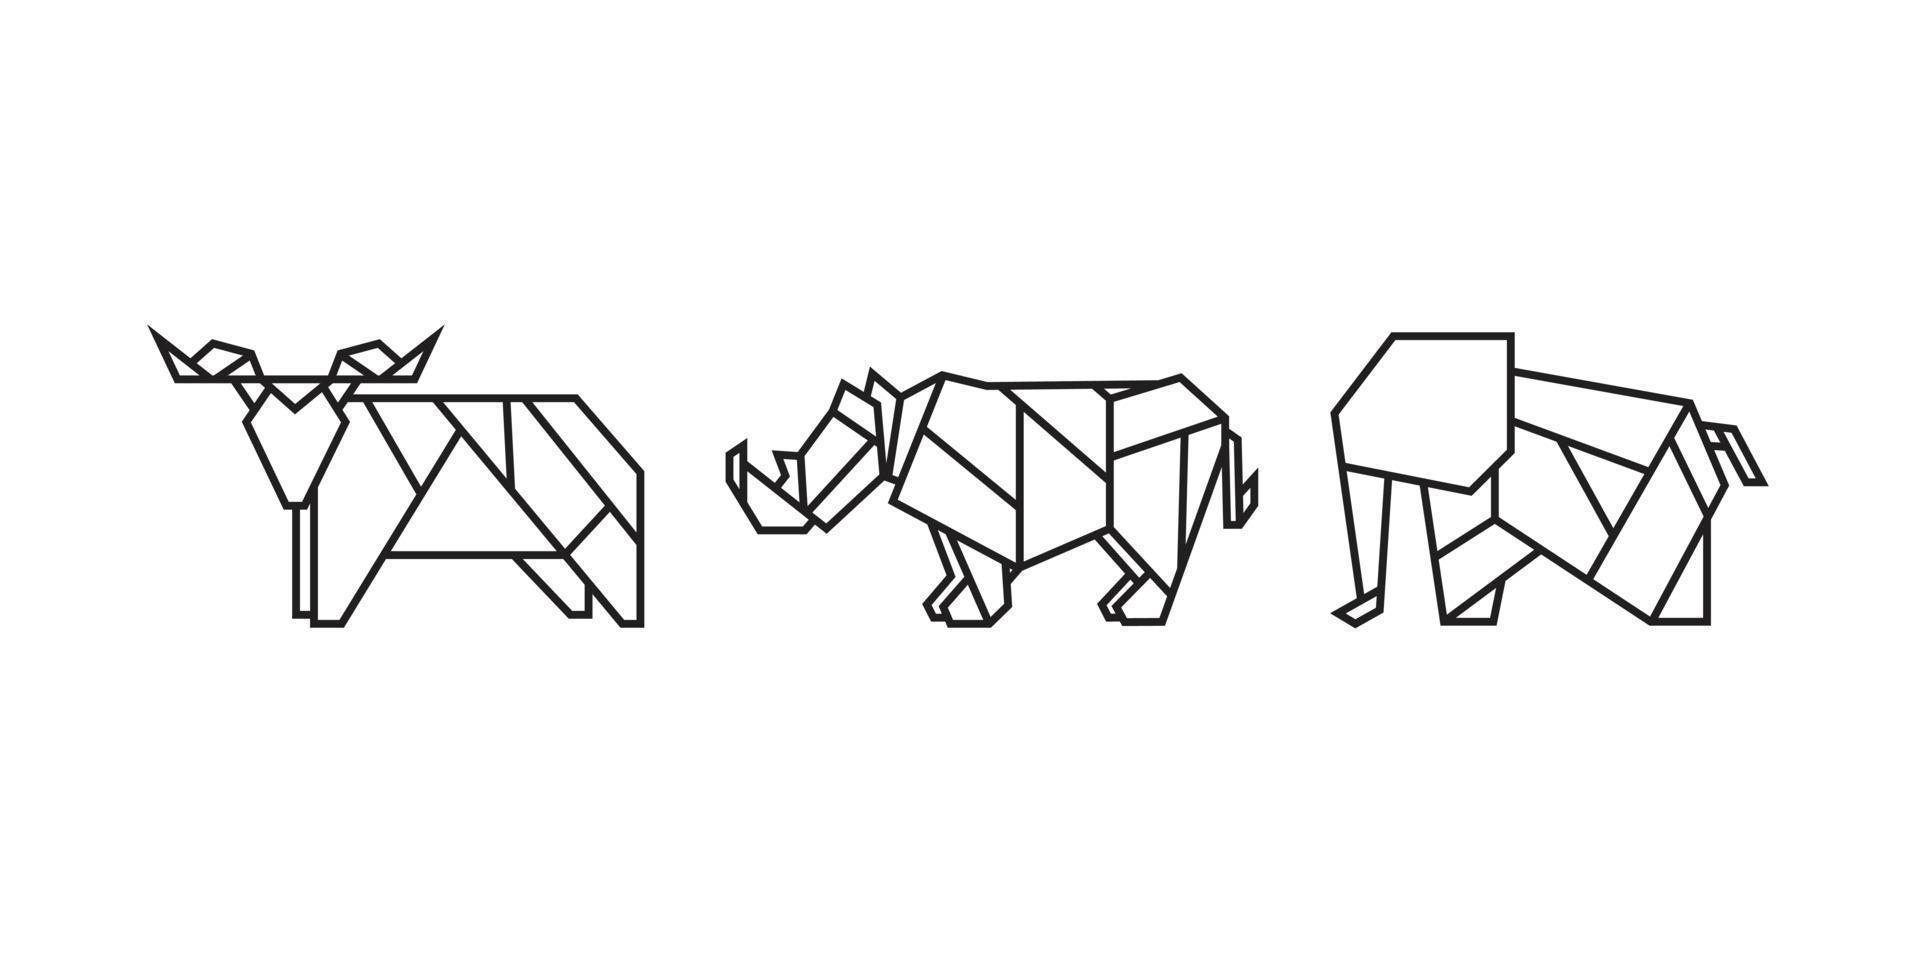 illustrazioni di animali africani in stile origami vettore